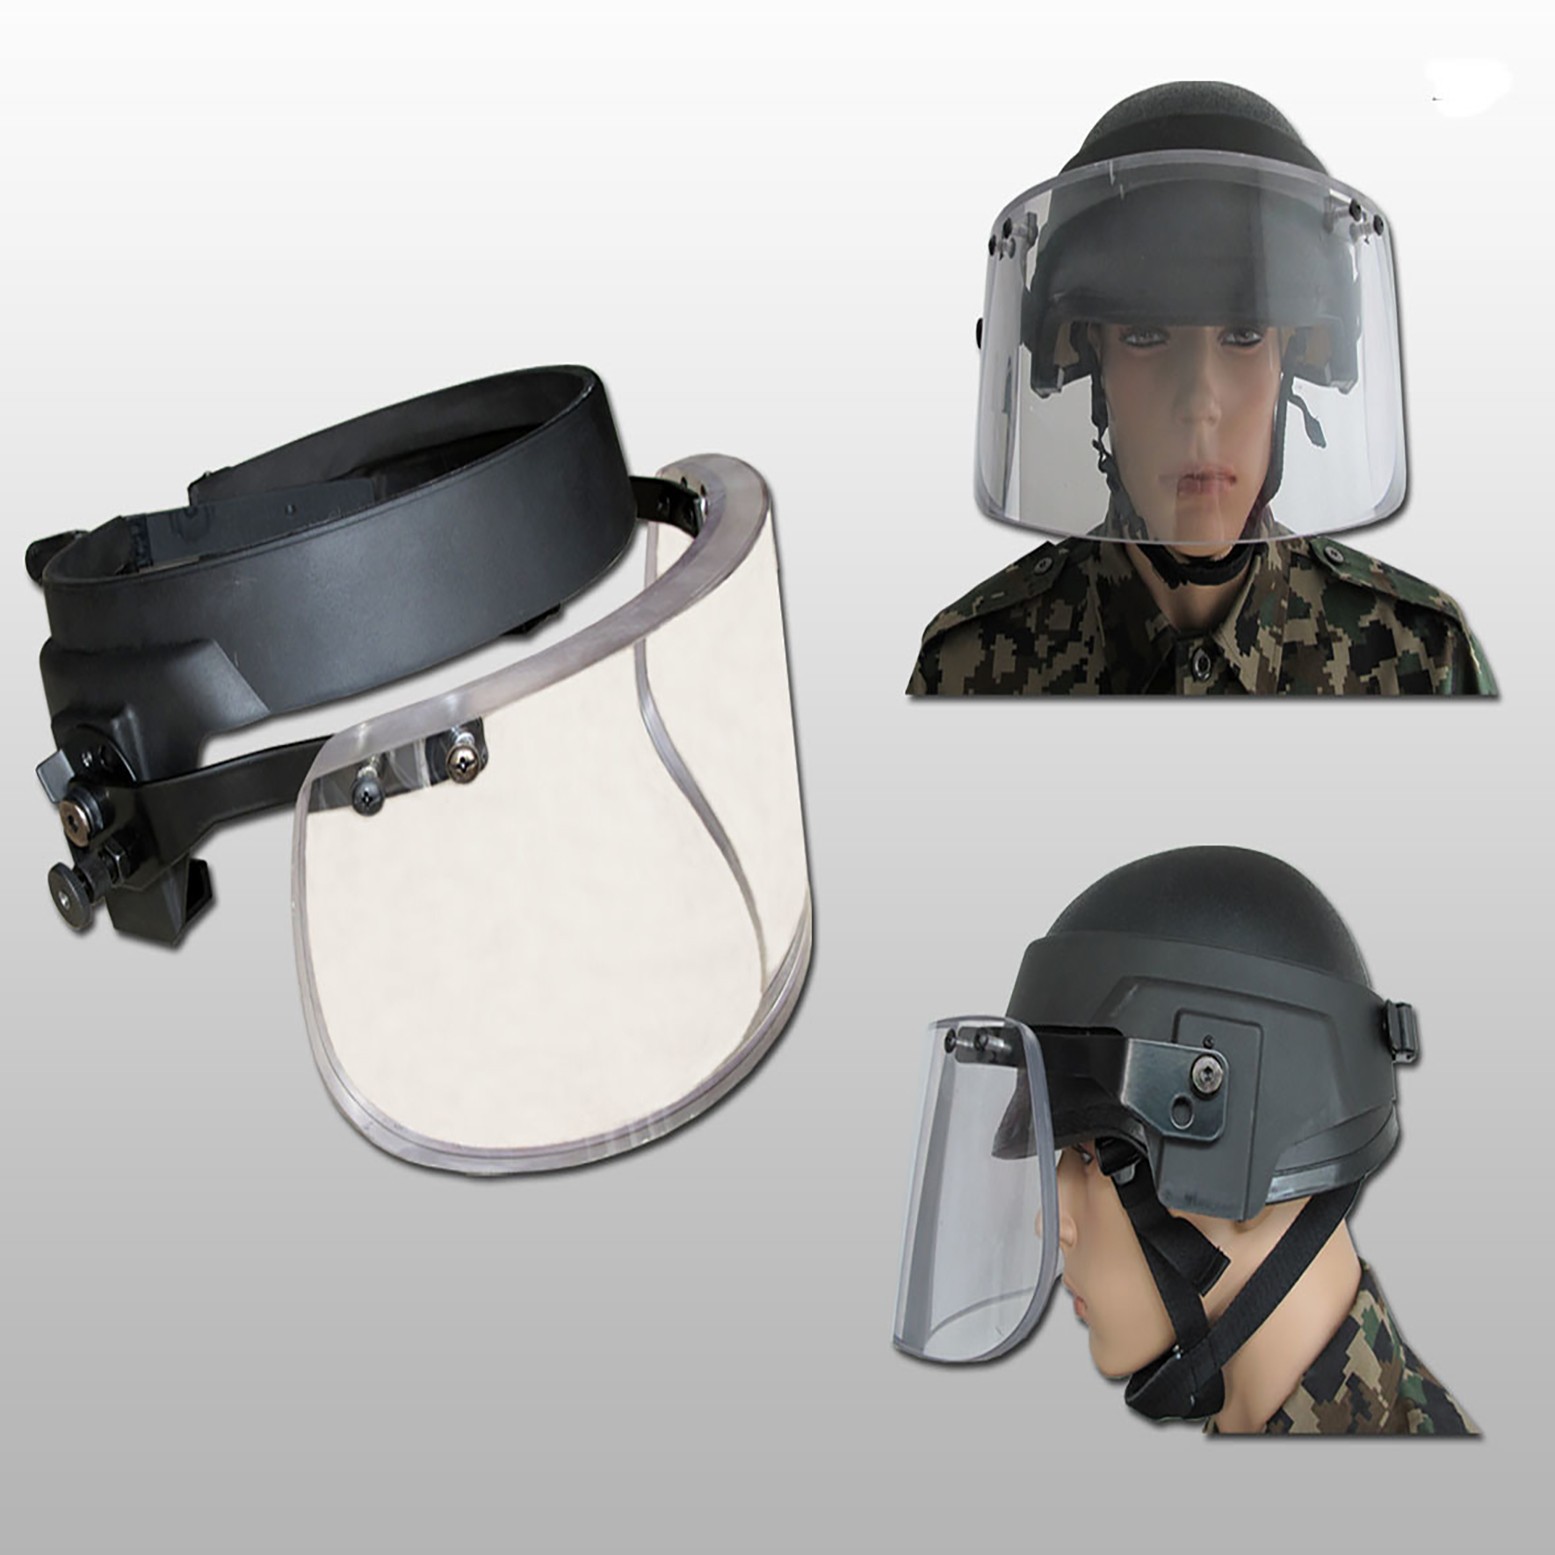 Full protection bulletproof visor